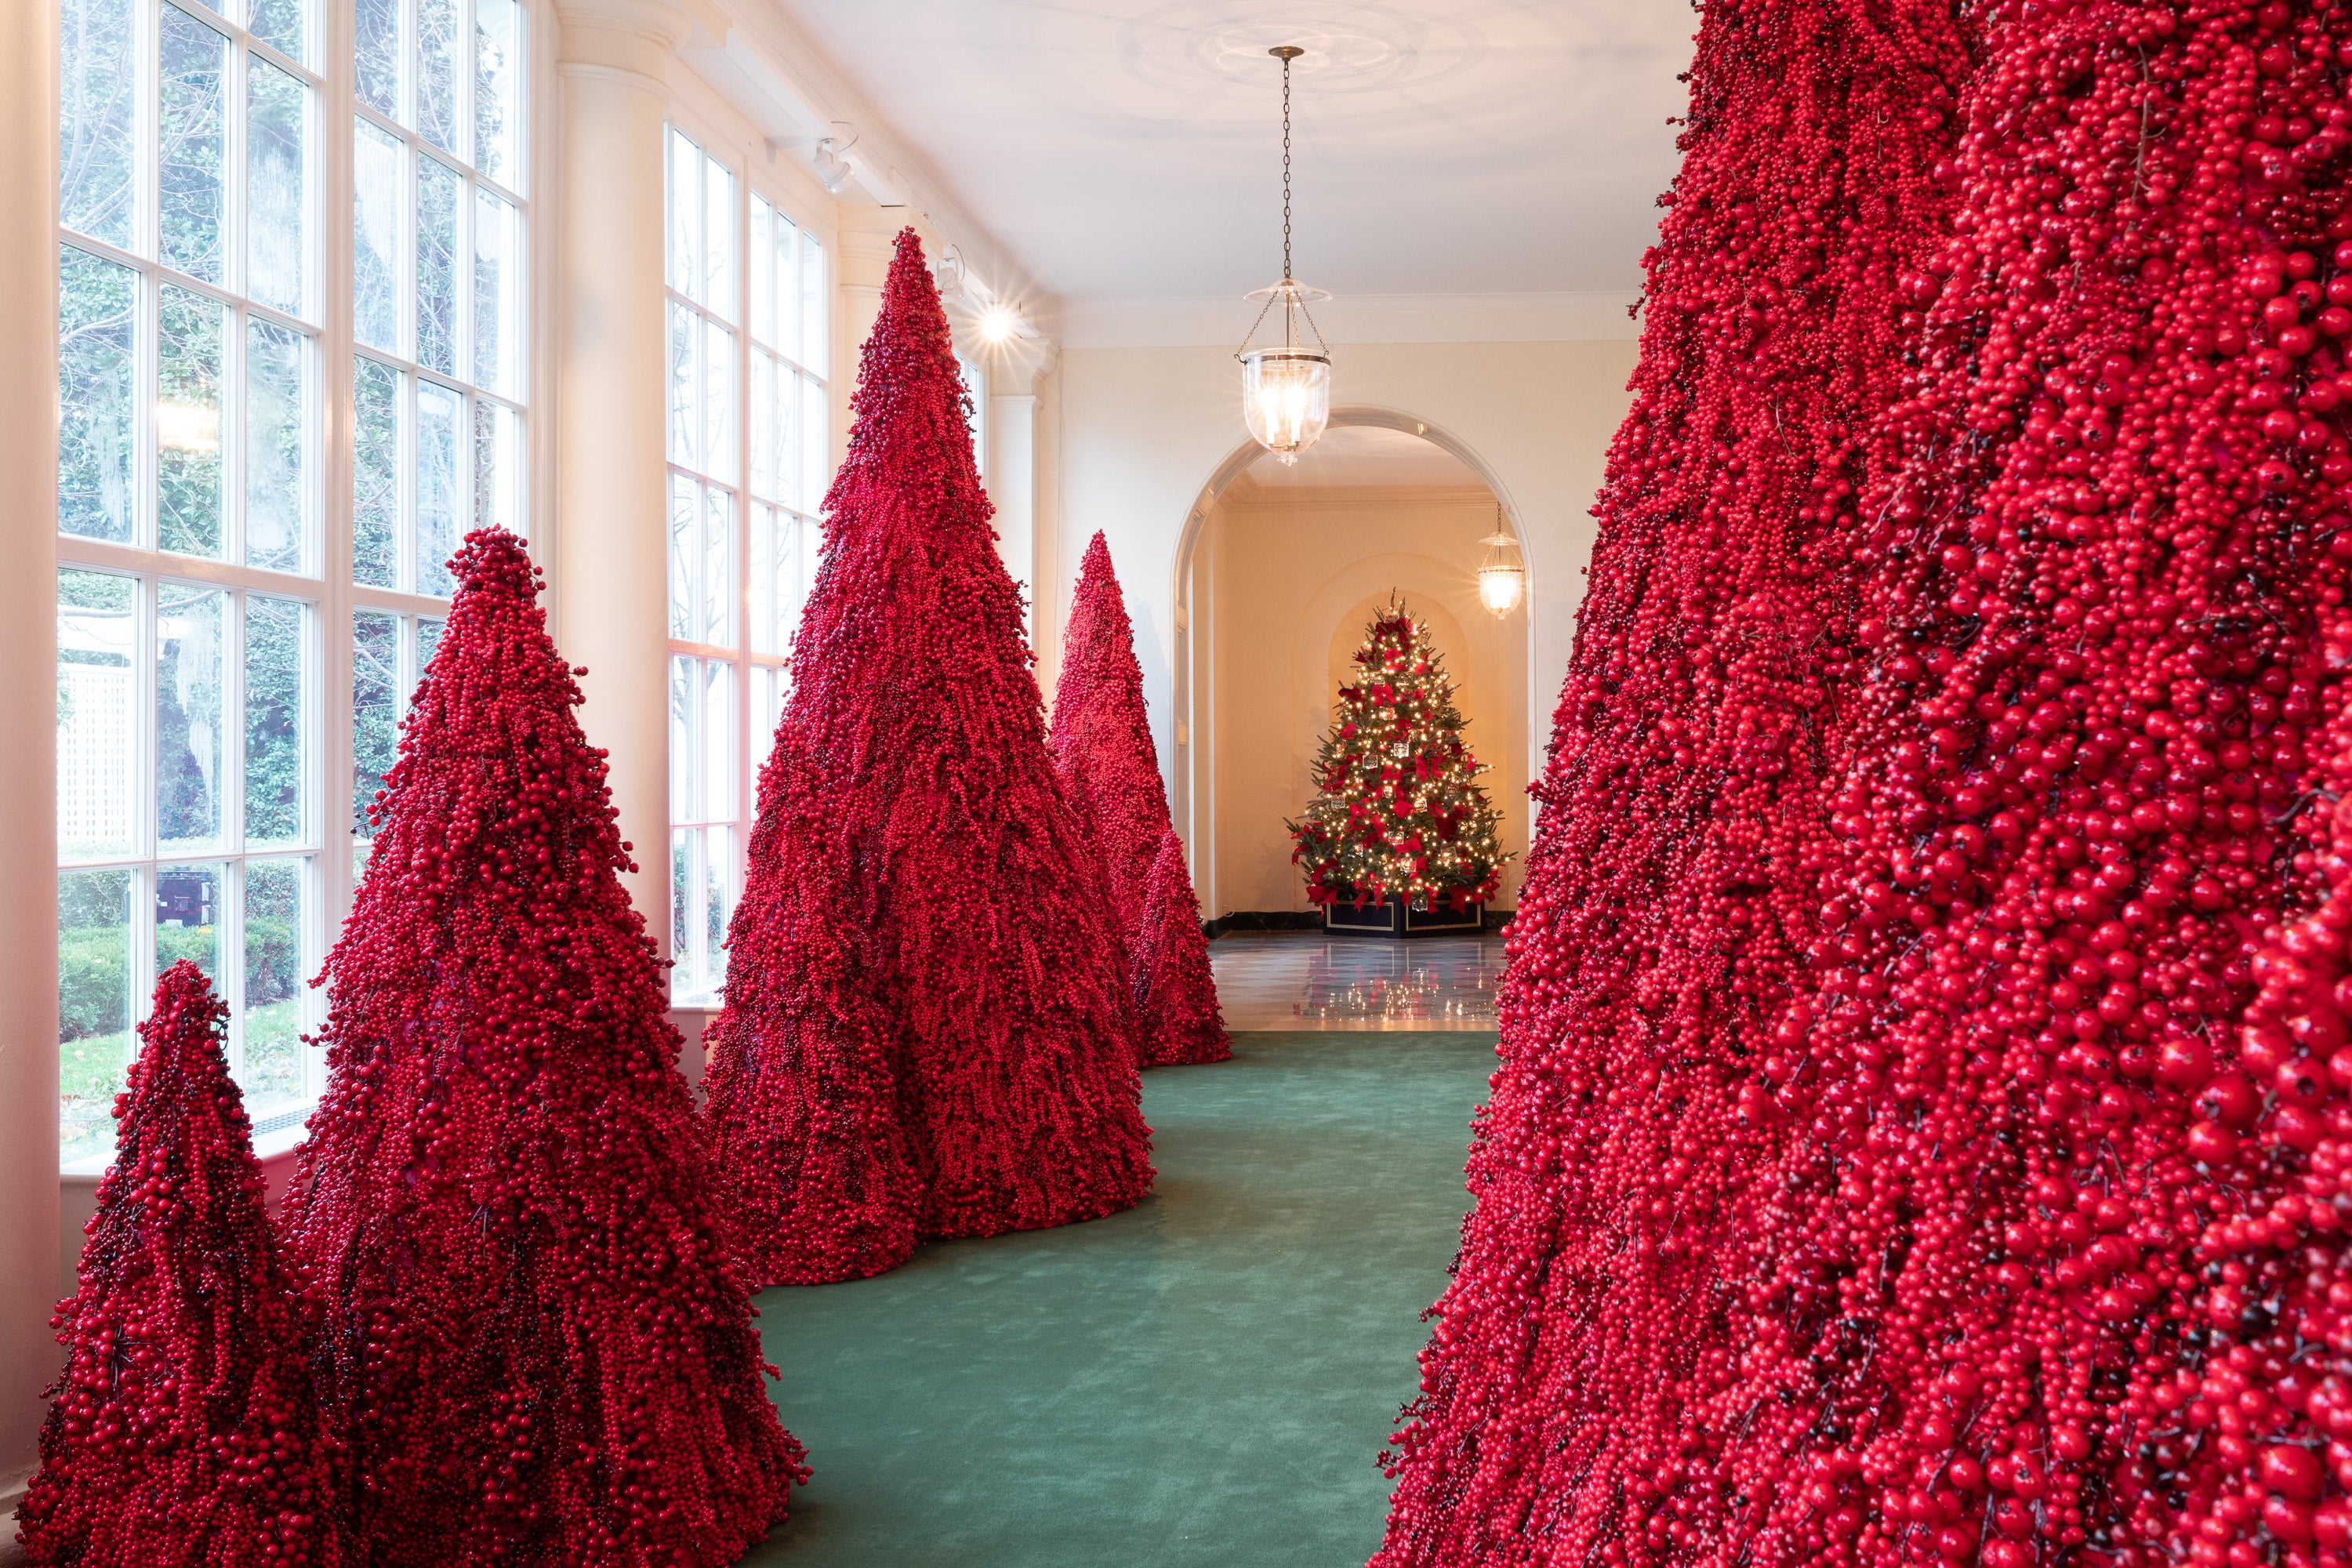 Мелания Трамп украсила белый дом к Рождеству красными елями